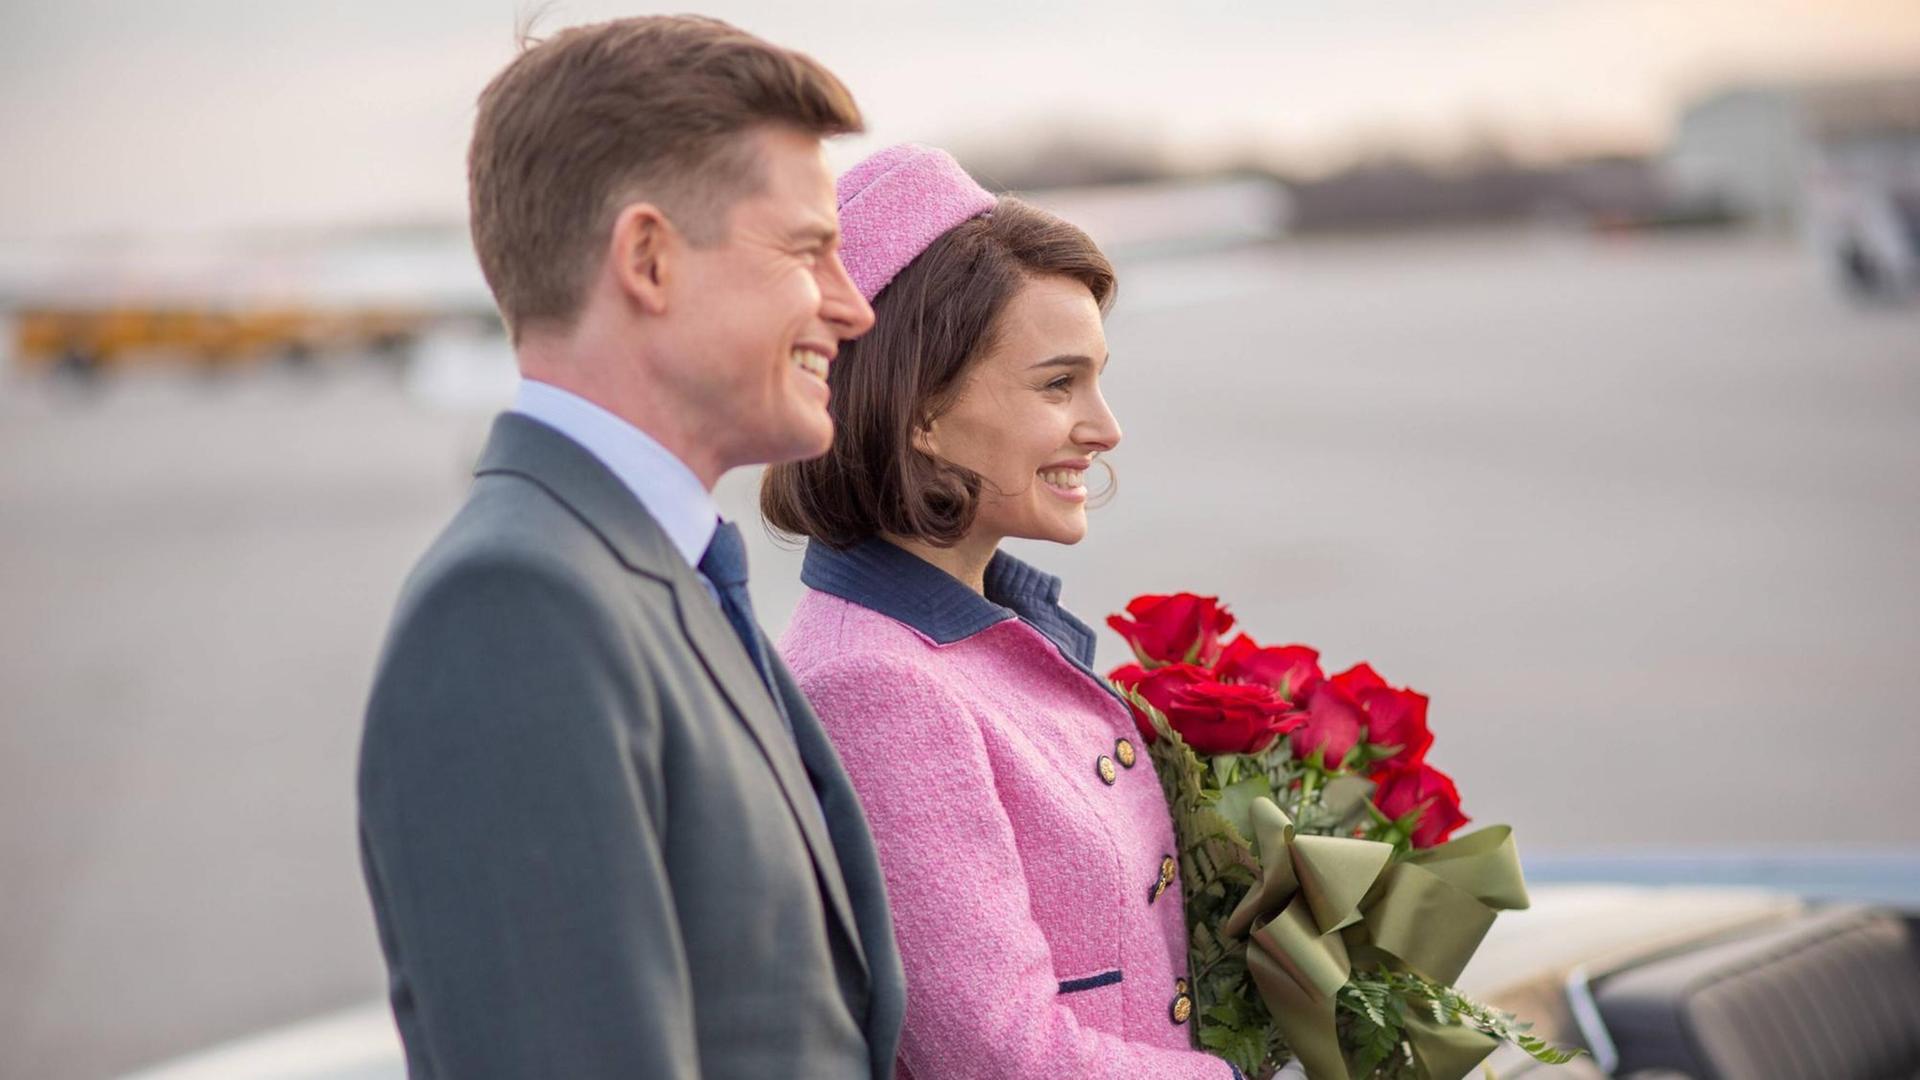 John F. Kennedy (Caspar Phillipson) steht neben seiner Frau Jackie (Natalie Portman), die einen Strauß rote Rosen in der Hand hält. Beide sind im Profil zu sehen und lächeln